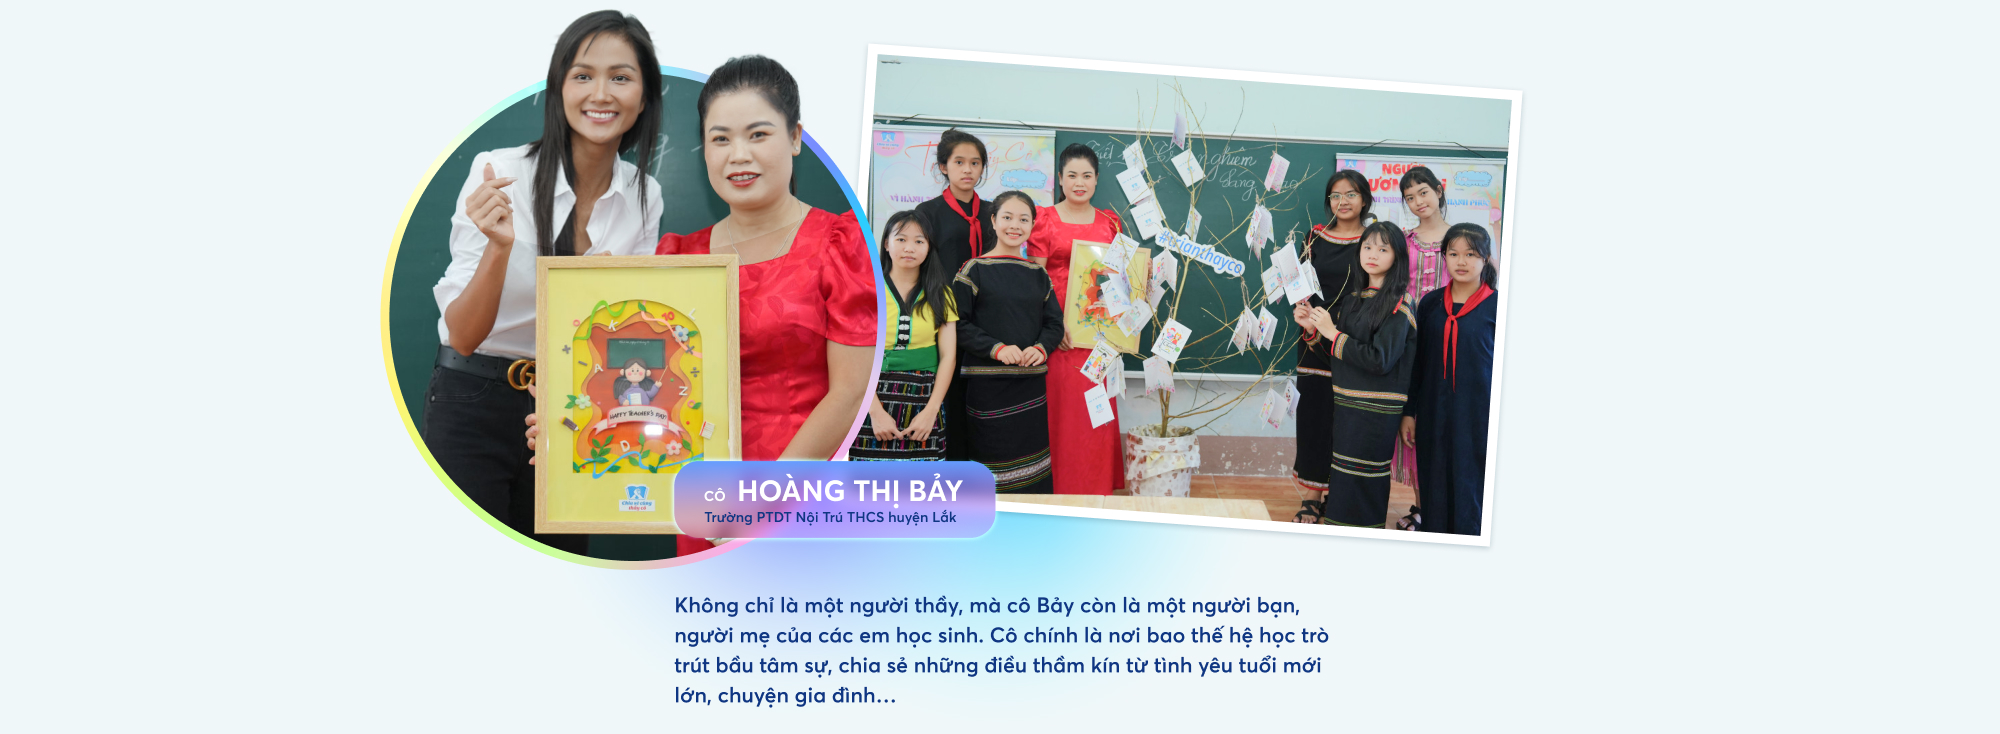 Hành trình lan tỏa thông điệp Dạy - học hạnh phúc từ Chia sẻ cùng thầy cô 2023 - Ảnh 9.